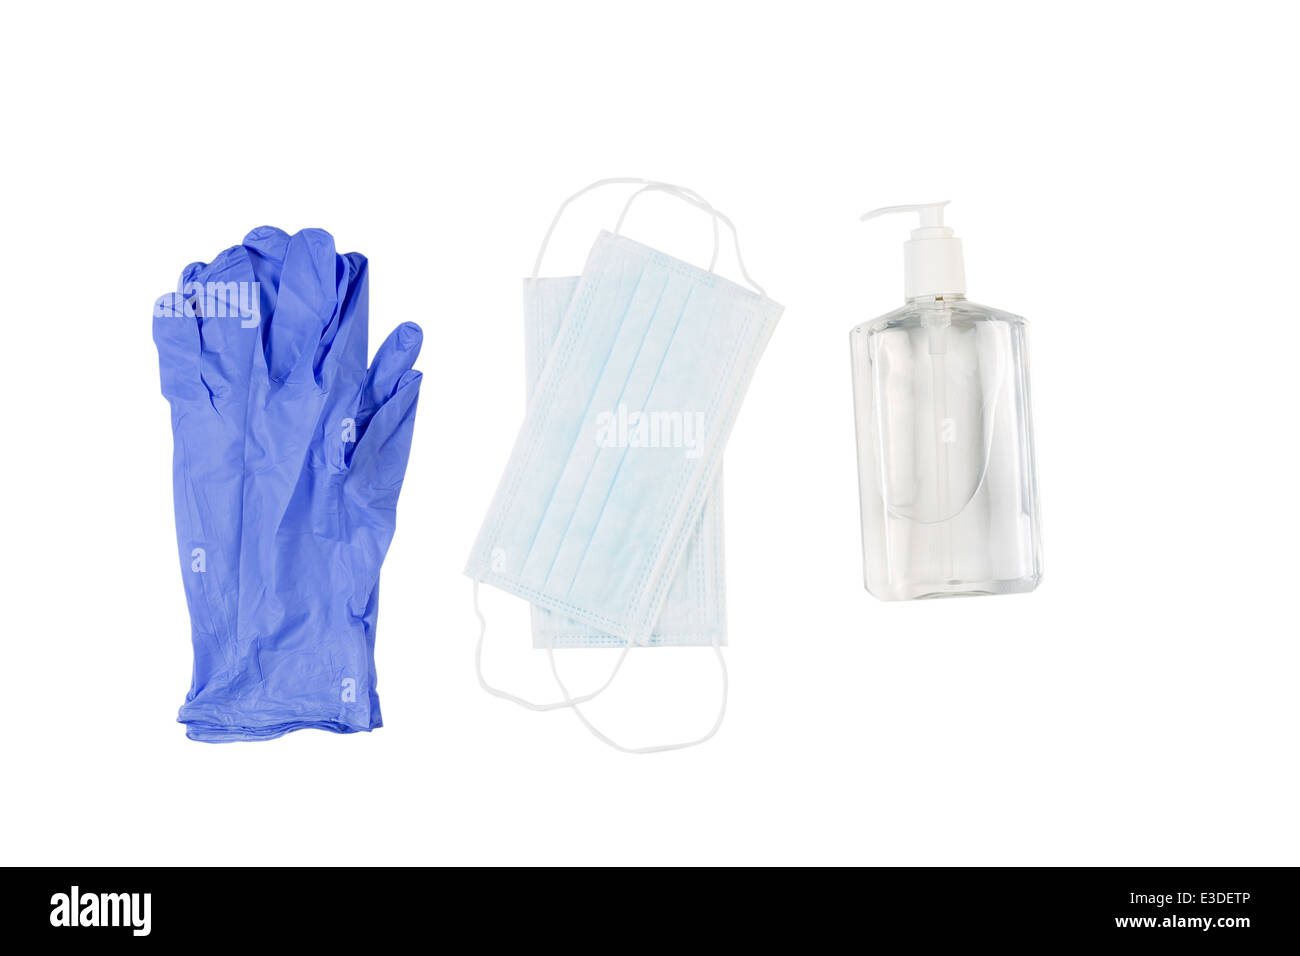 Vue horizontale de nouveaux articles d'hygiène composé de gants de latex, masque et d'assainisseur isolated on white Banque D'Images